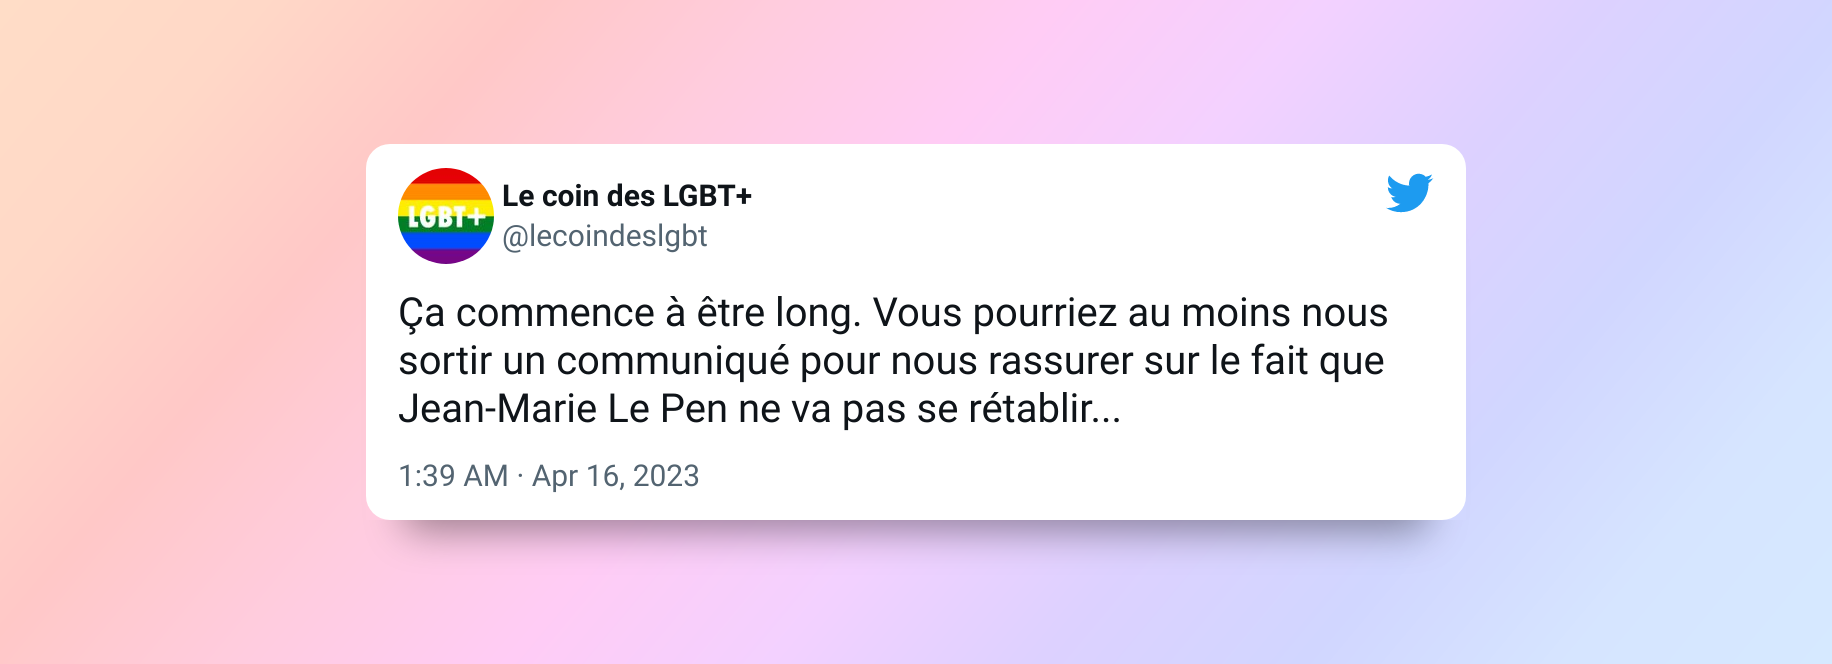 Un compte Twitter dédié à la cause des LGBT+ souhaite la mort de Jean-Marie Le Pen. Ça n’aide clairement pas ! Vous-en pensez quoi ?